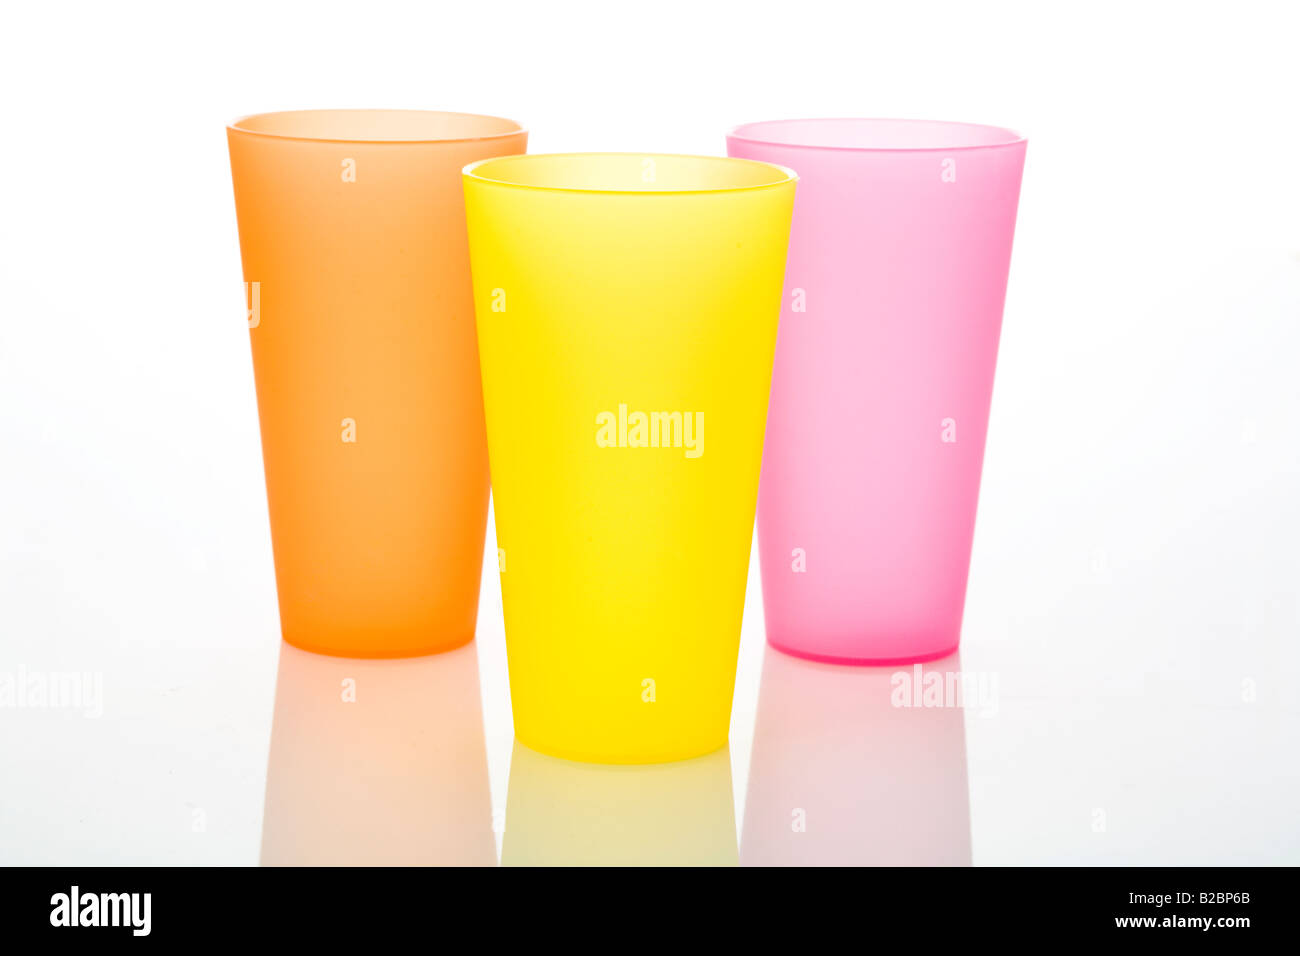 Regroupement de trois verres en plastique colorés sur fond blanc Banque D'Images